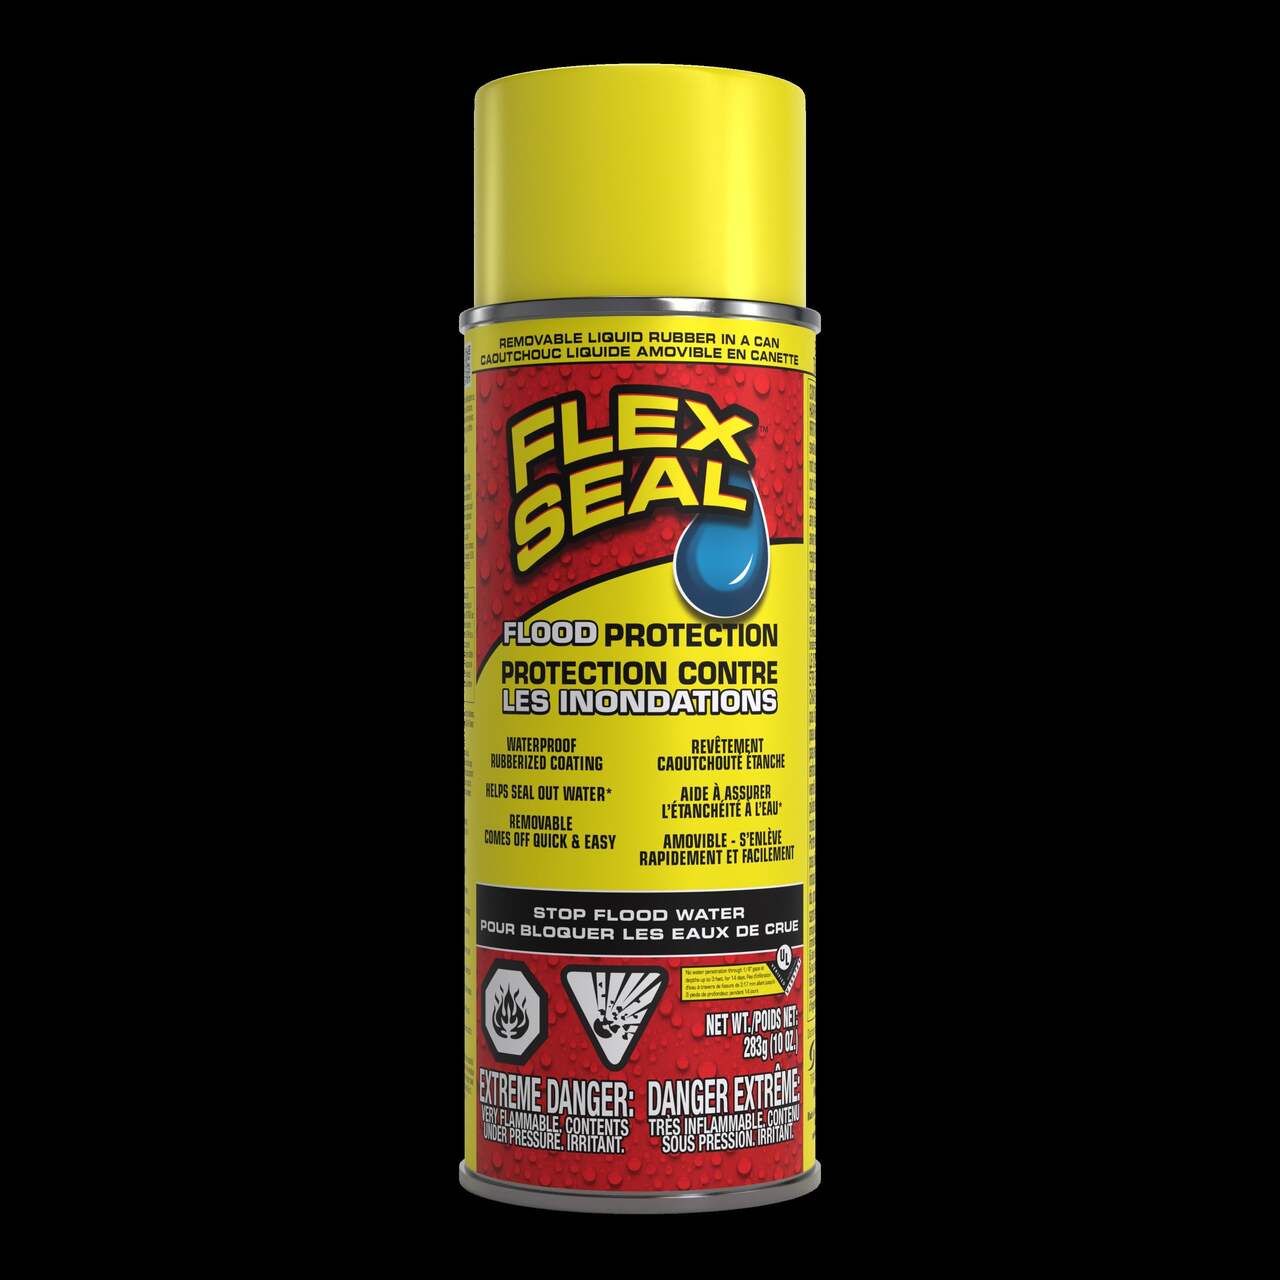 Flex Seal Flex Paste Super Thick Rubber Paste, Moldable Leak Protector  Sealant, Black, 3-lb